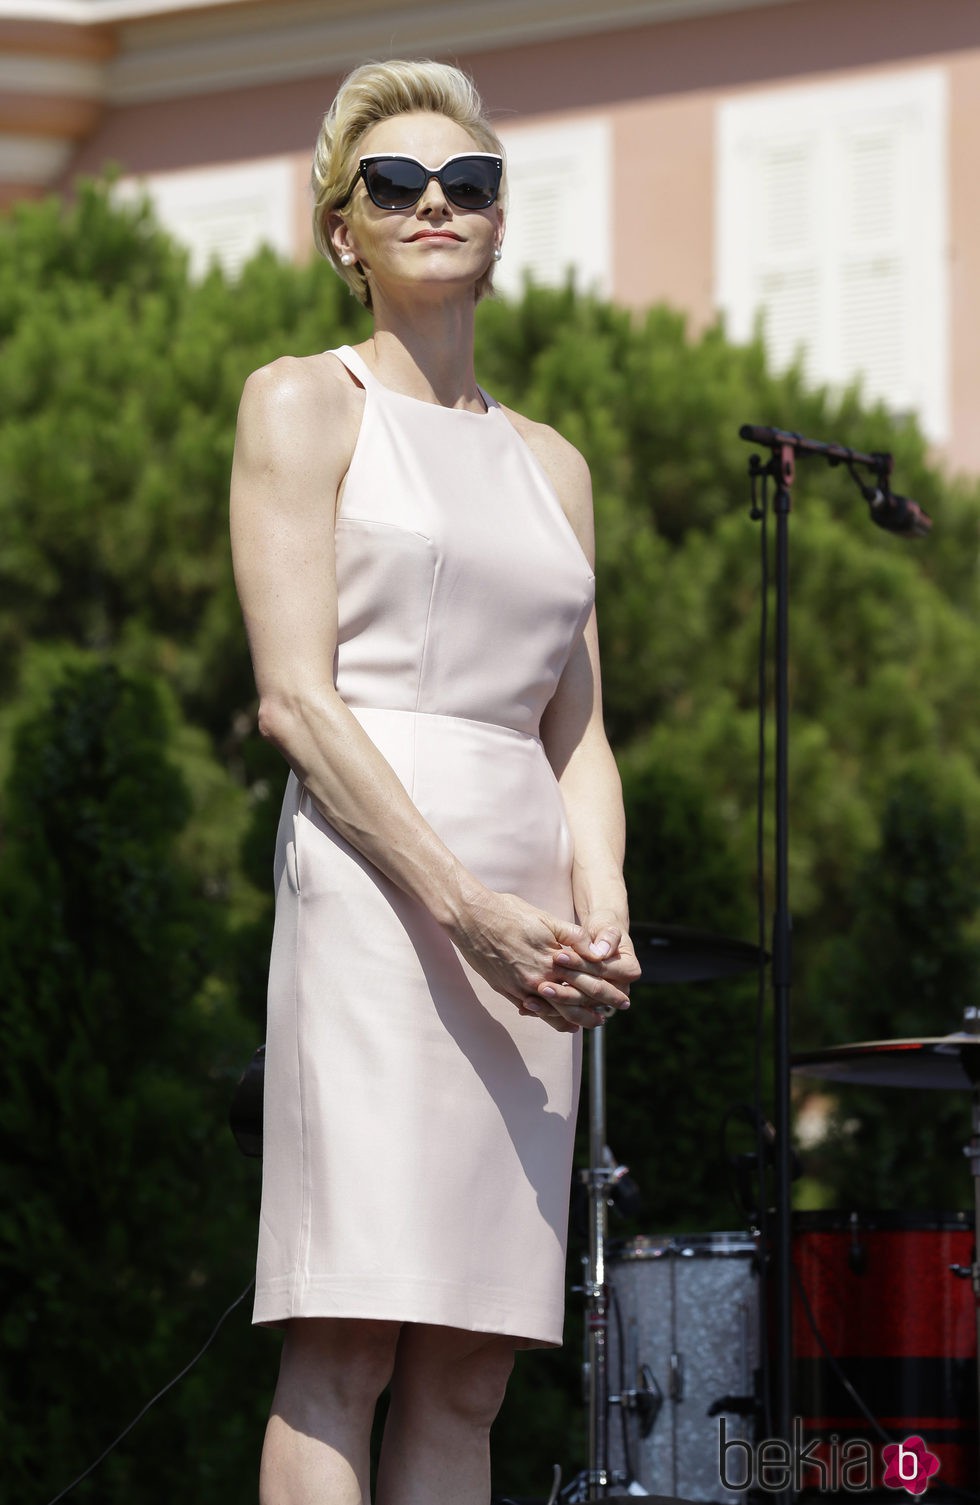 La Princesa Charlene de Mónaco en el 10 Aniversario de la ascensión al trono de Alberto II